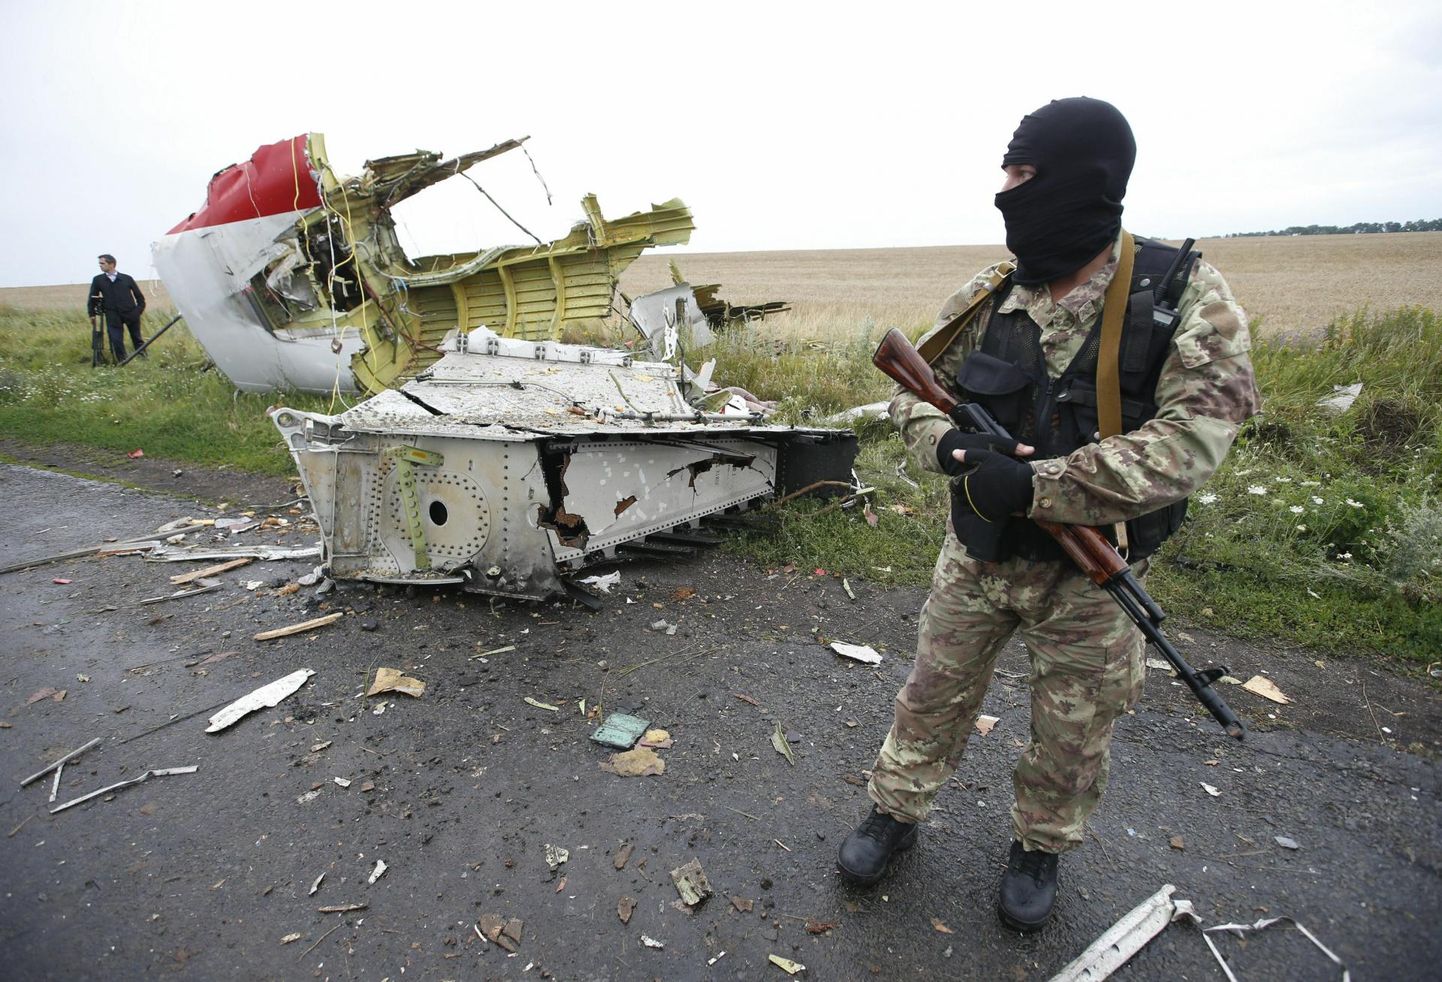 Venemaa mahitatud mässuline Malaysia Airlinesi lennu MH17 vraki juures Ida-Ukrainas Hrabove lähistel päev pärast katastroofi 2014. aasta juulis. 